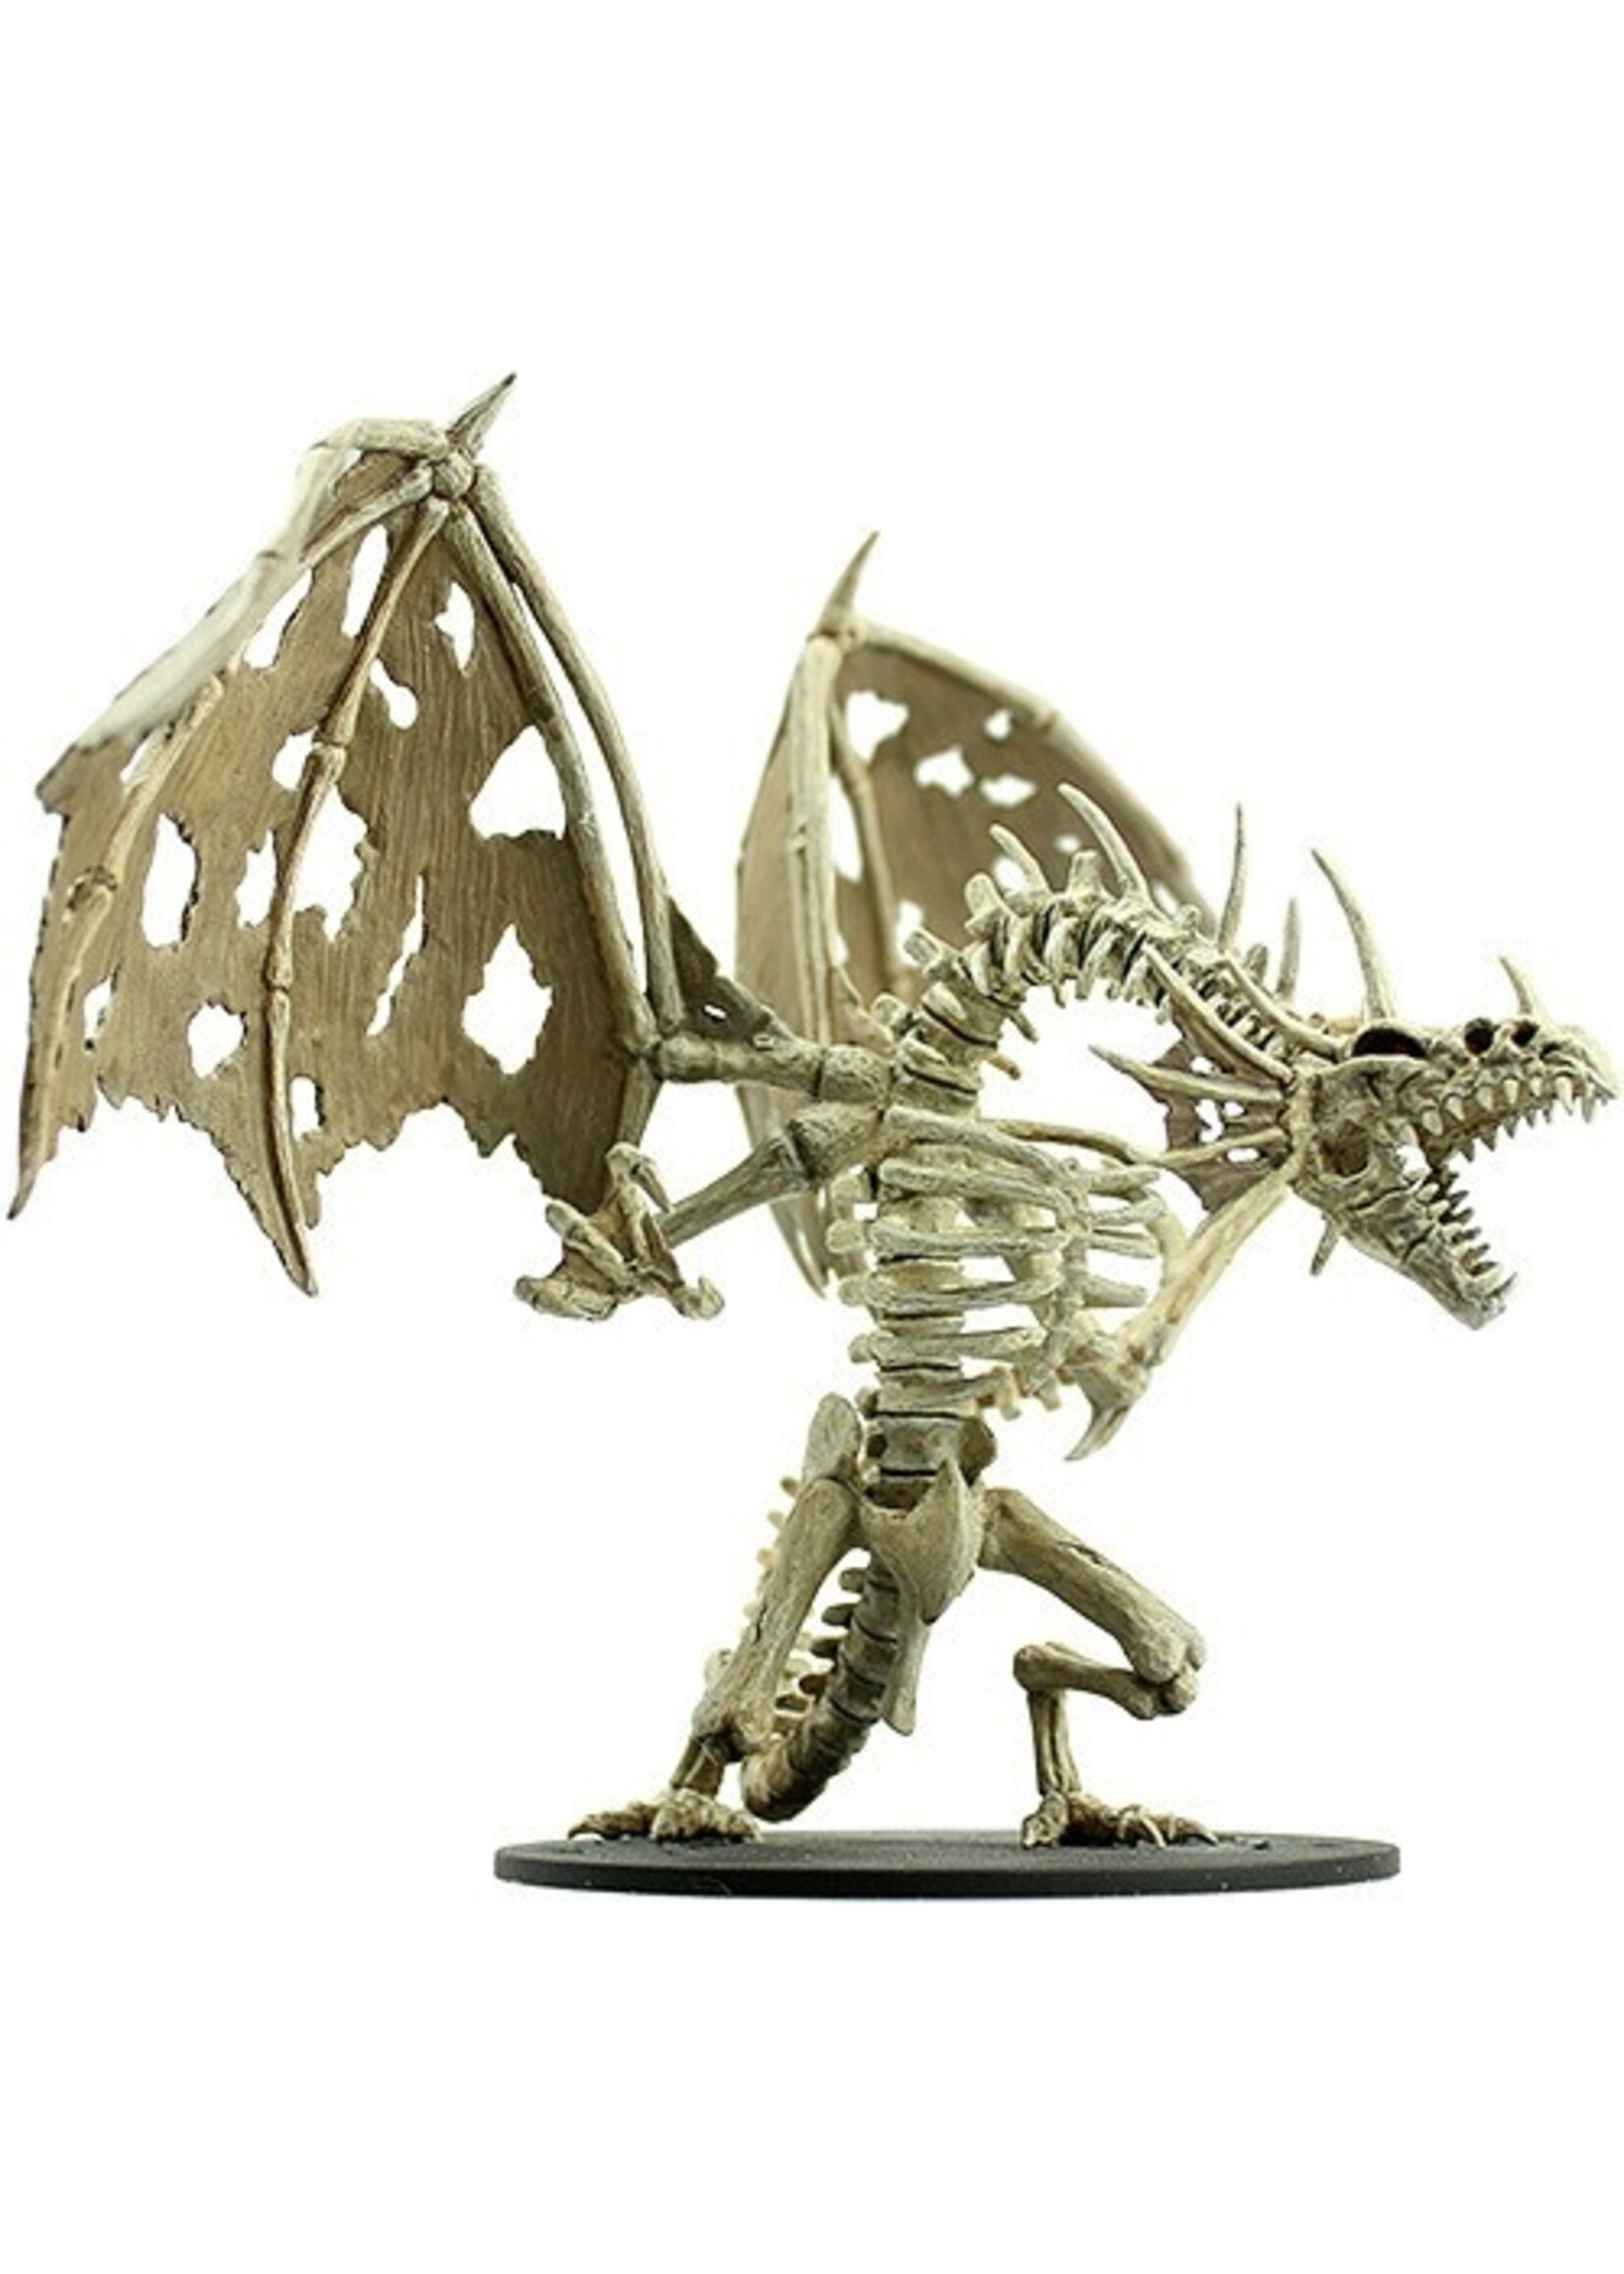 Wizkids Pathfinder Battles: Gargantuan Skeletal Dragon